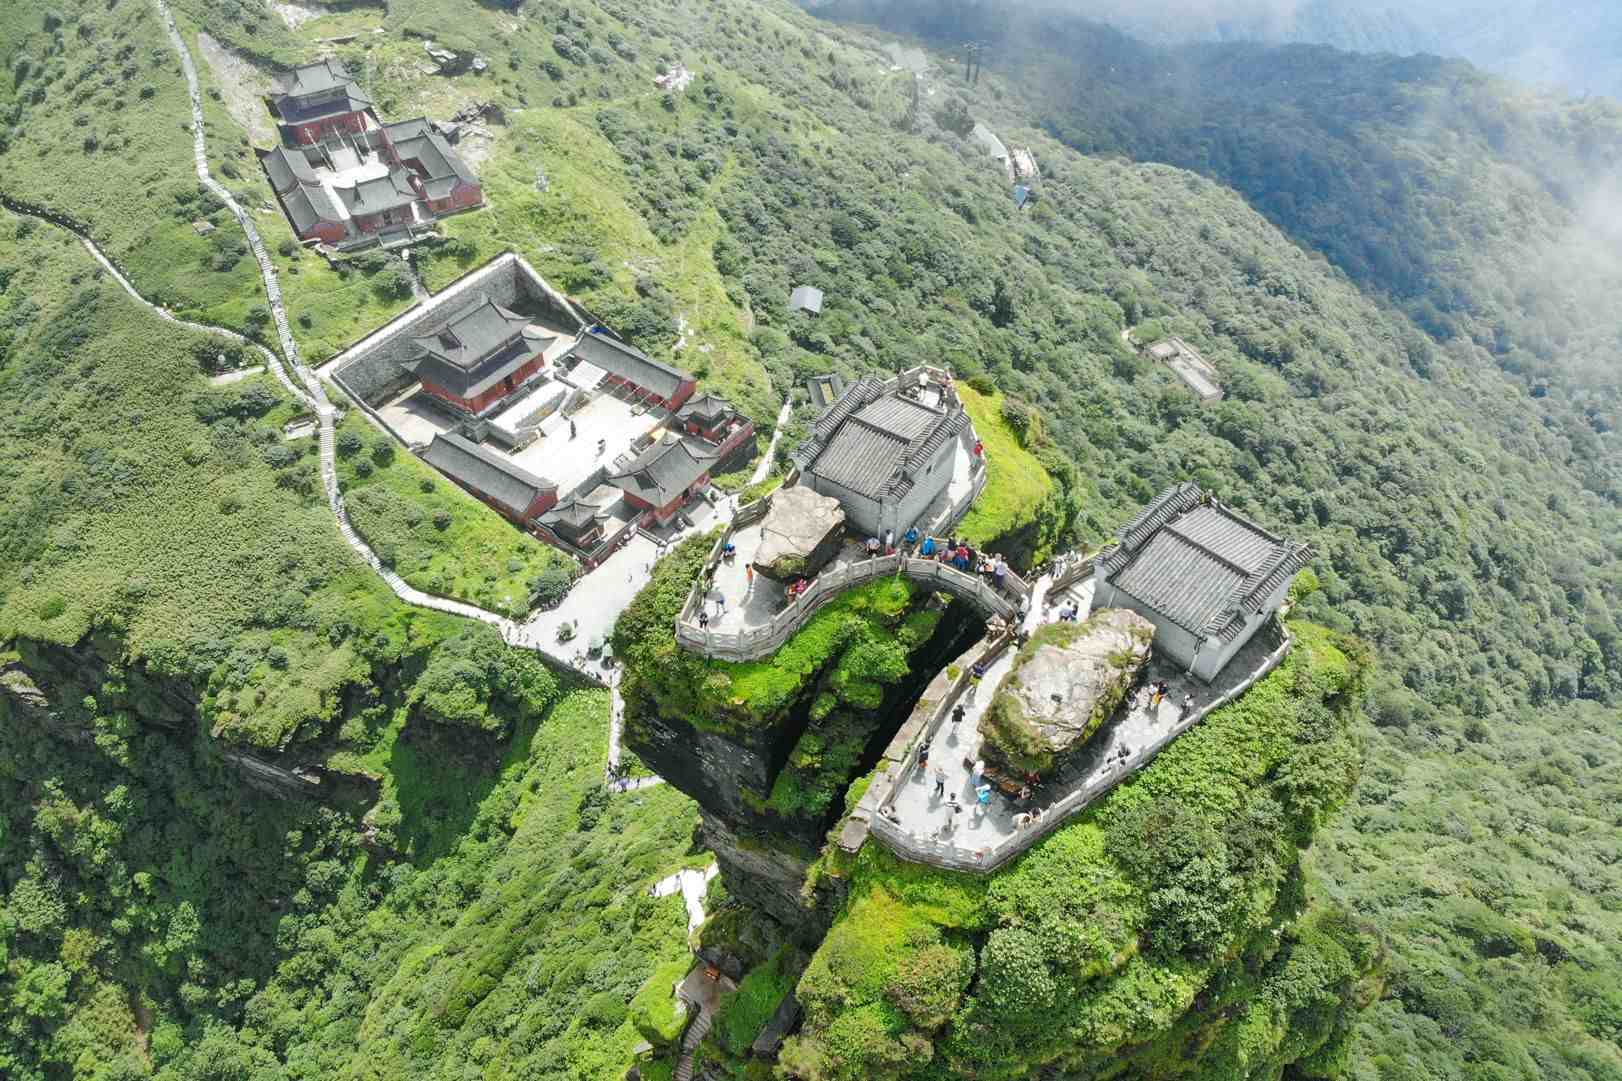 盖在贵州高山上的寺庙，拥有上千年历史，被称为“空中庙宇”